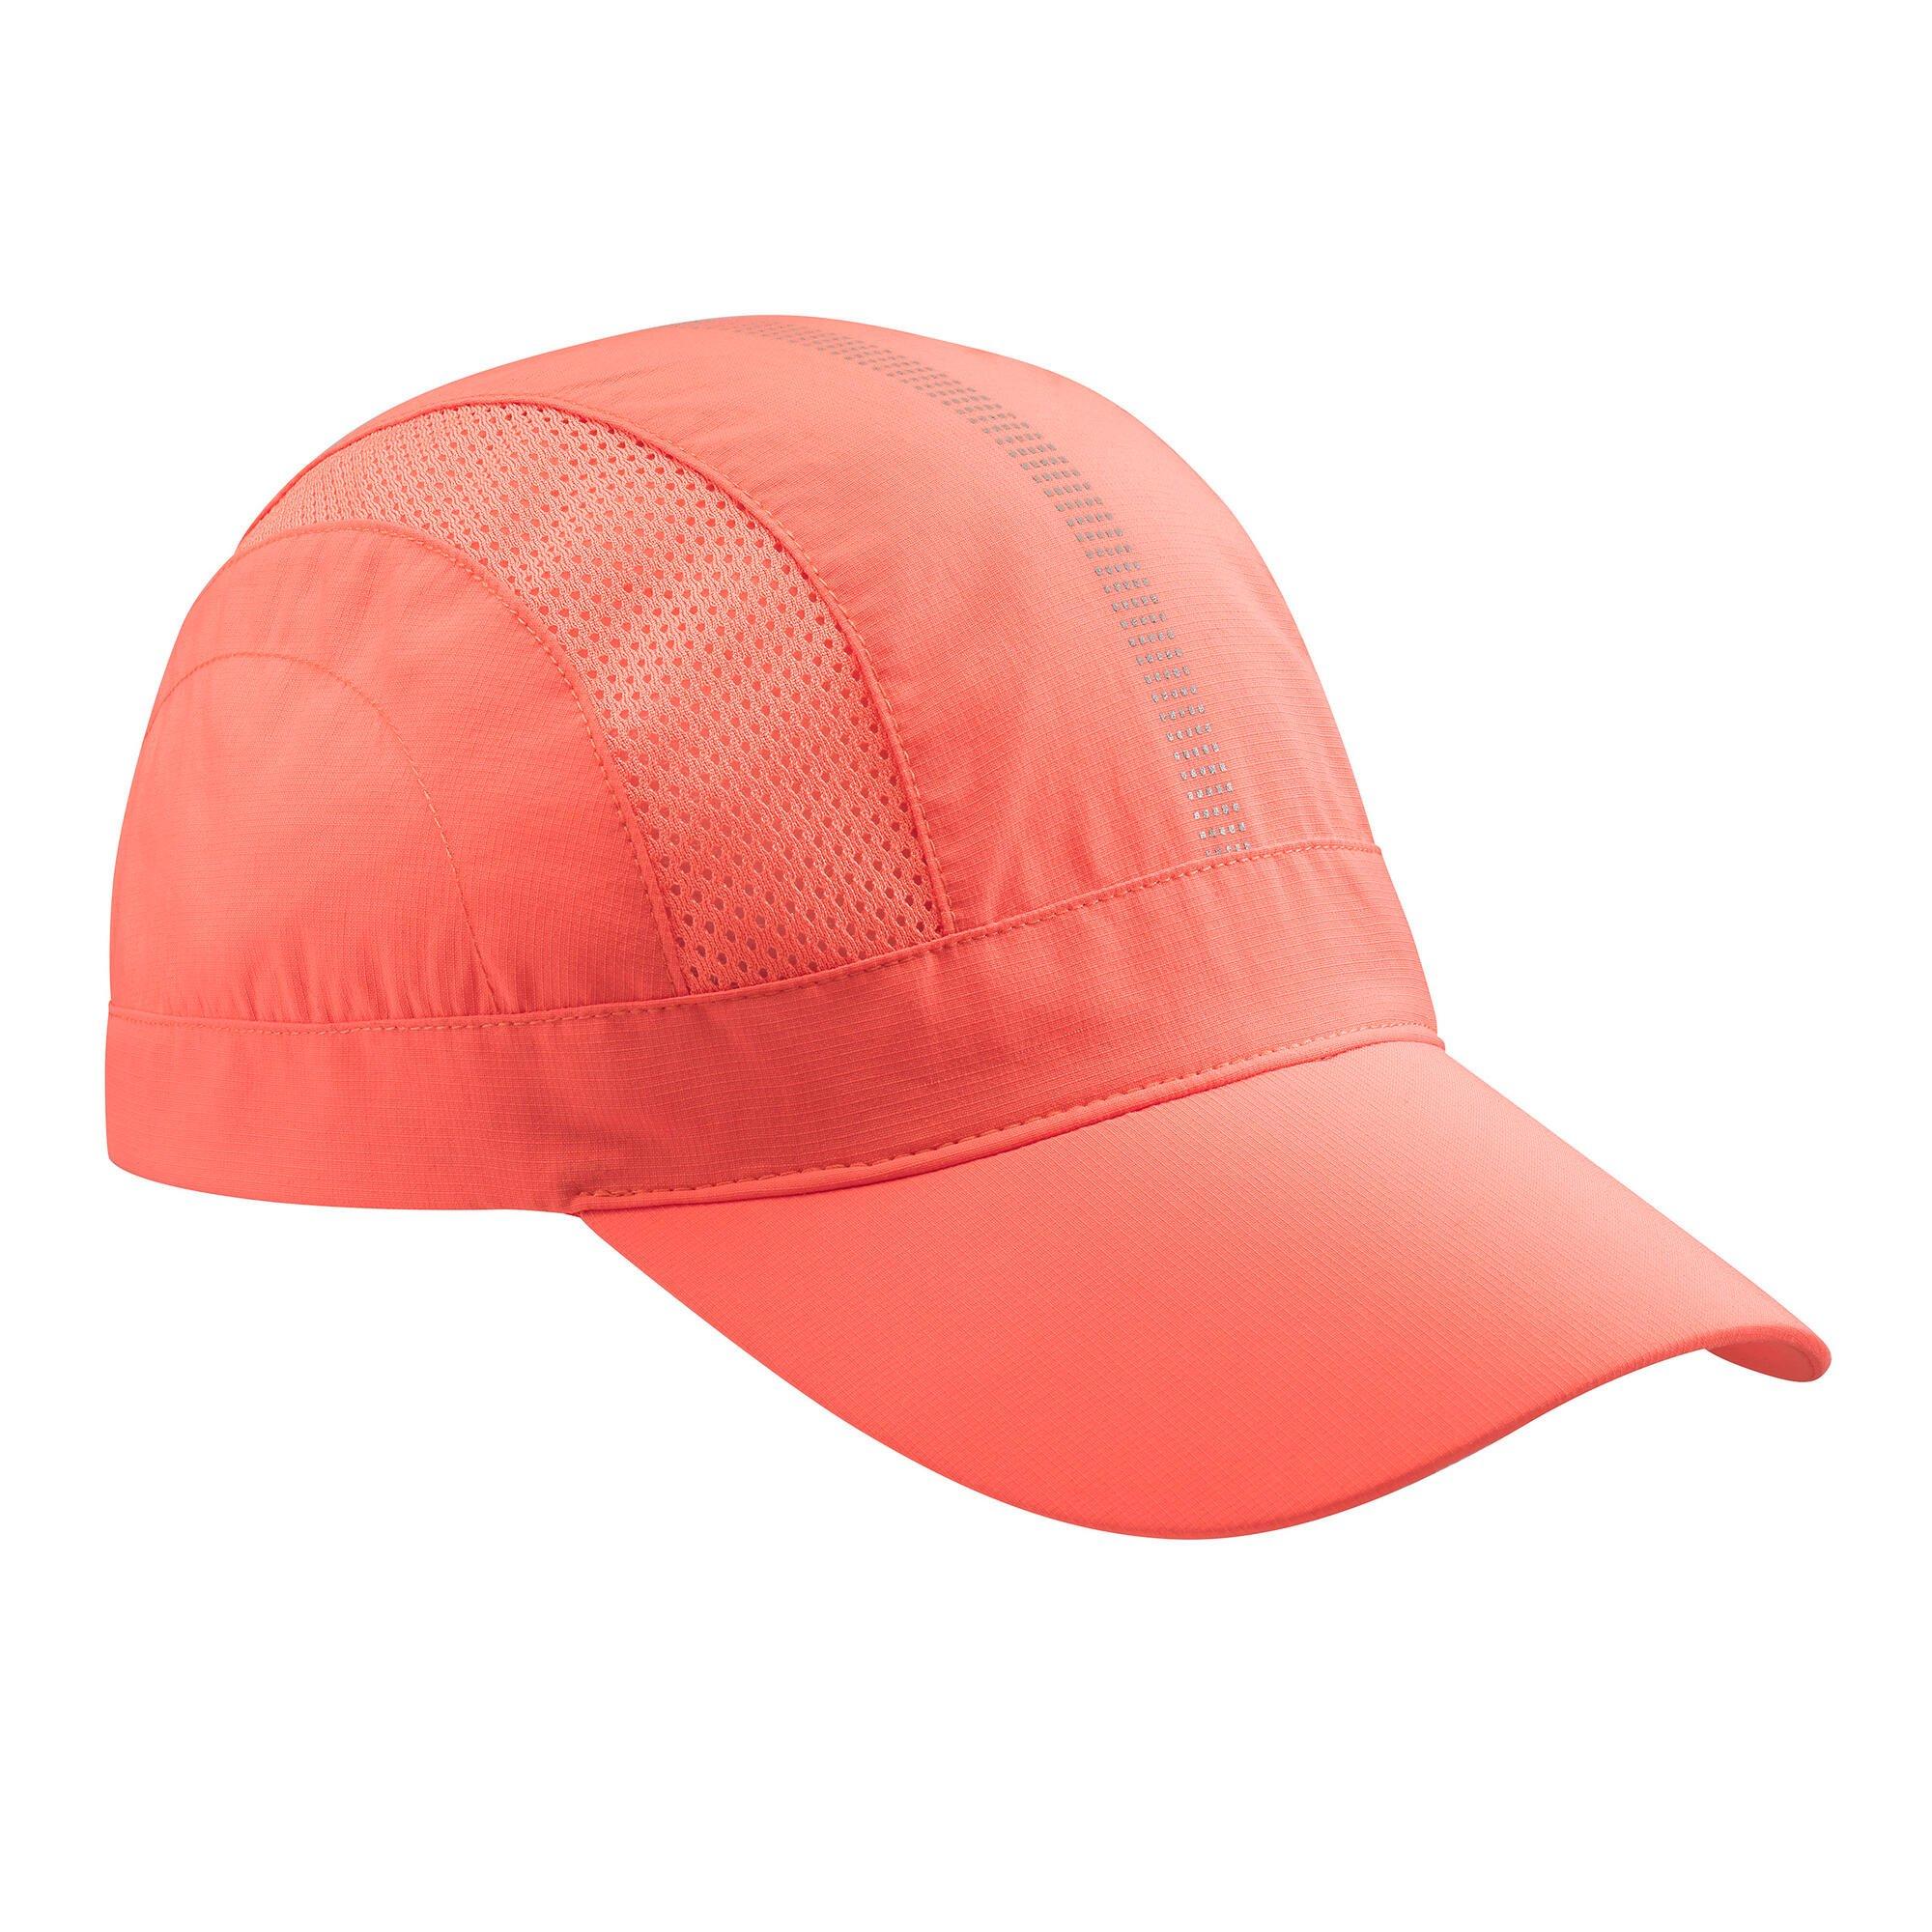 Вентилируемая кепка Decathlon - Легкая Forclaz, розовый